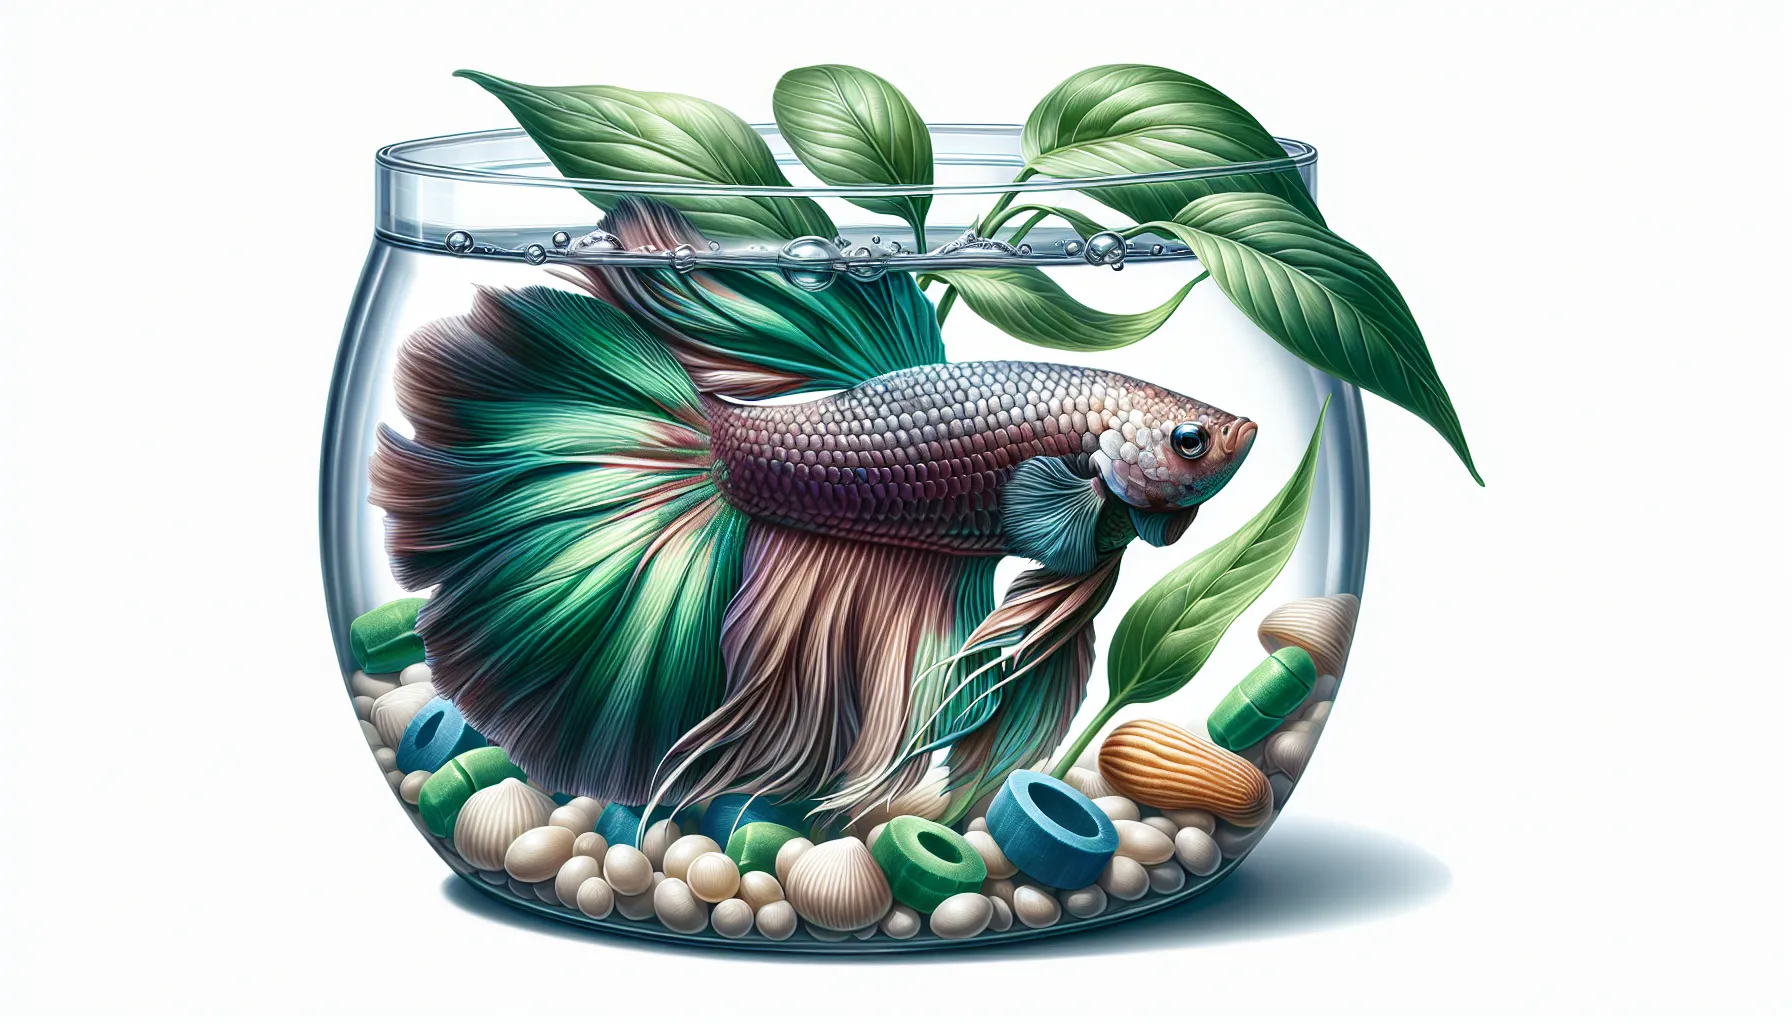 Imagen de un pez betta saludable en su hábitat acuático, exemplificando los cuidados y la alimentación adecuada para esta especie.